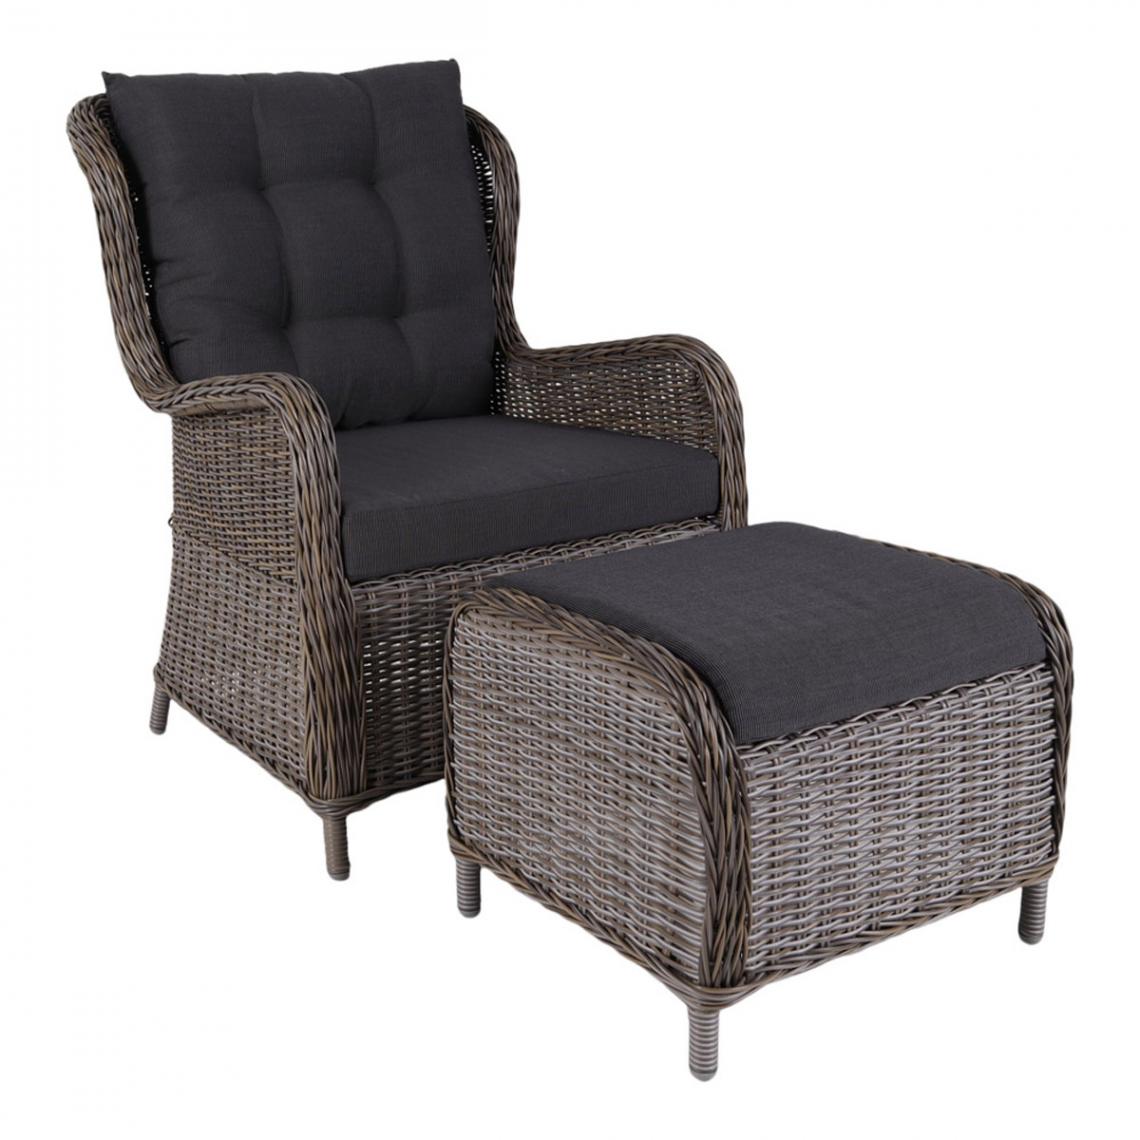 Visiodirect - Chaise longue coloris gris kubu avec coussin et repose pieds - longueur 82 x profondeur 71 x hauteur 102 cm - Chaises de jardin